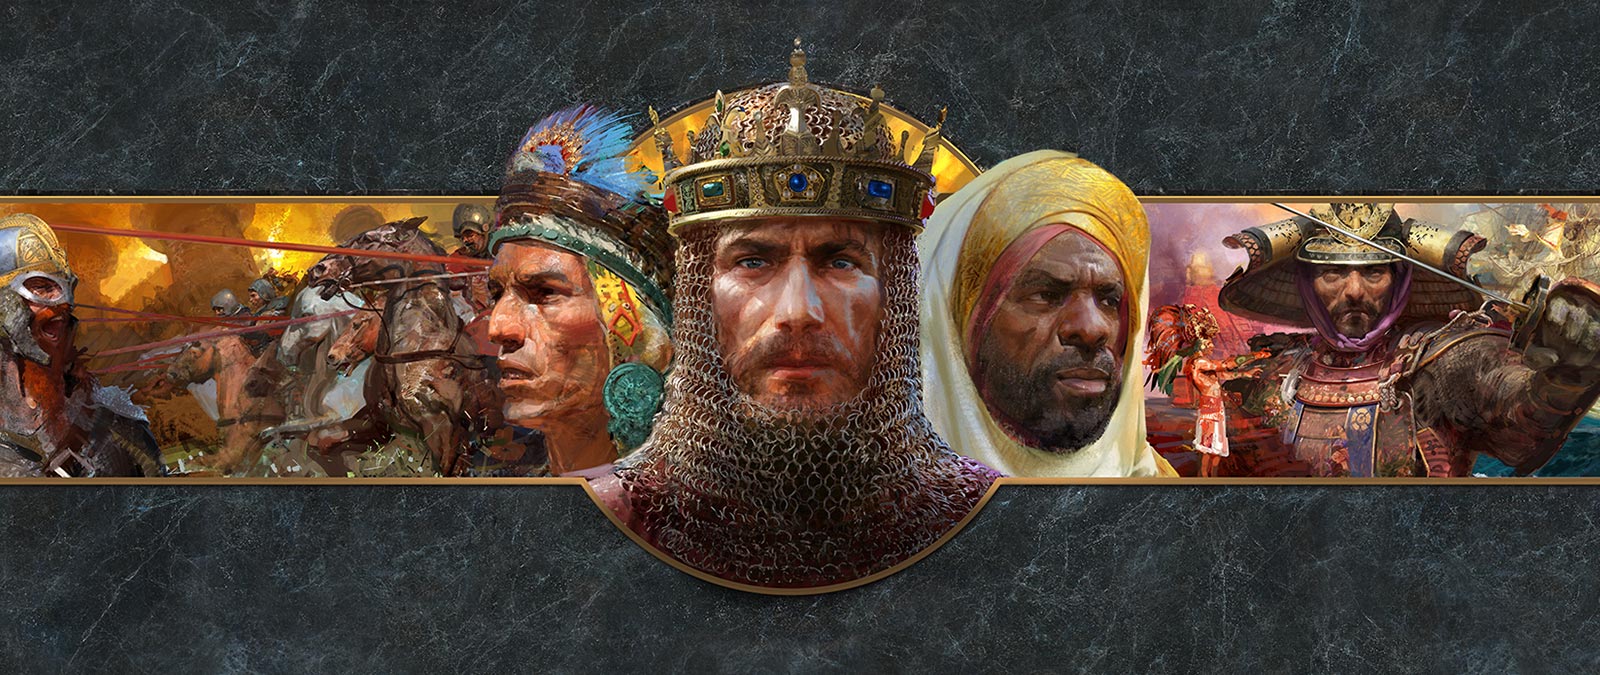 Портреты лидеров различных цивилизаций показаны на фоне сцен битвы.